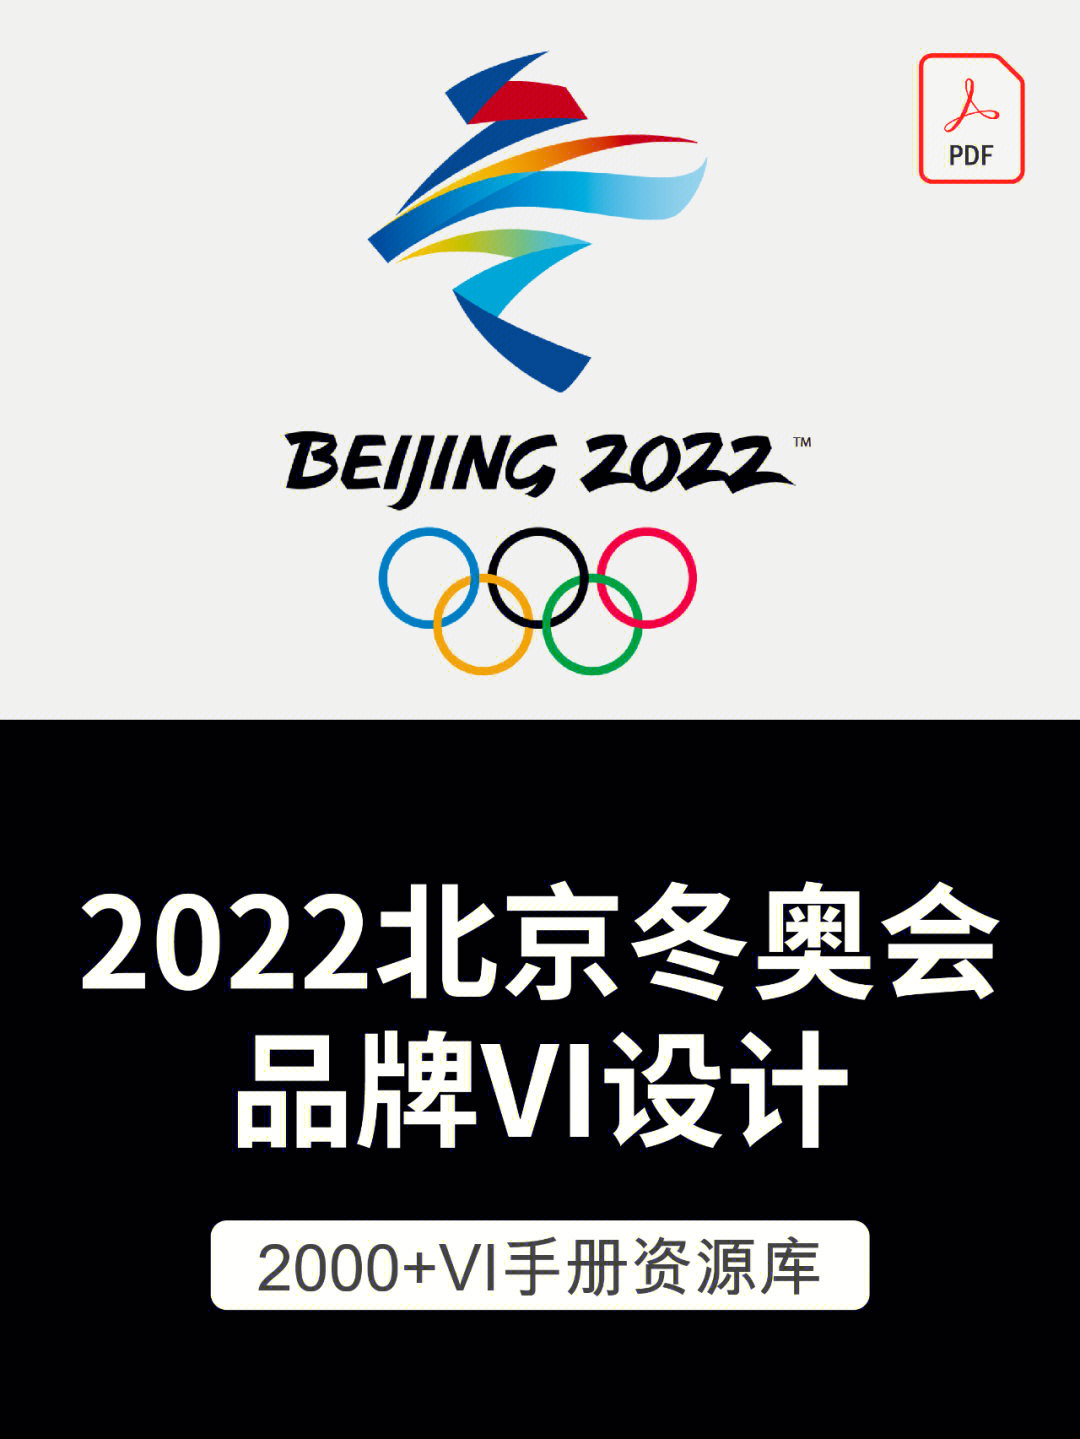 北京冬奥会会徽的寓意图片